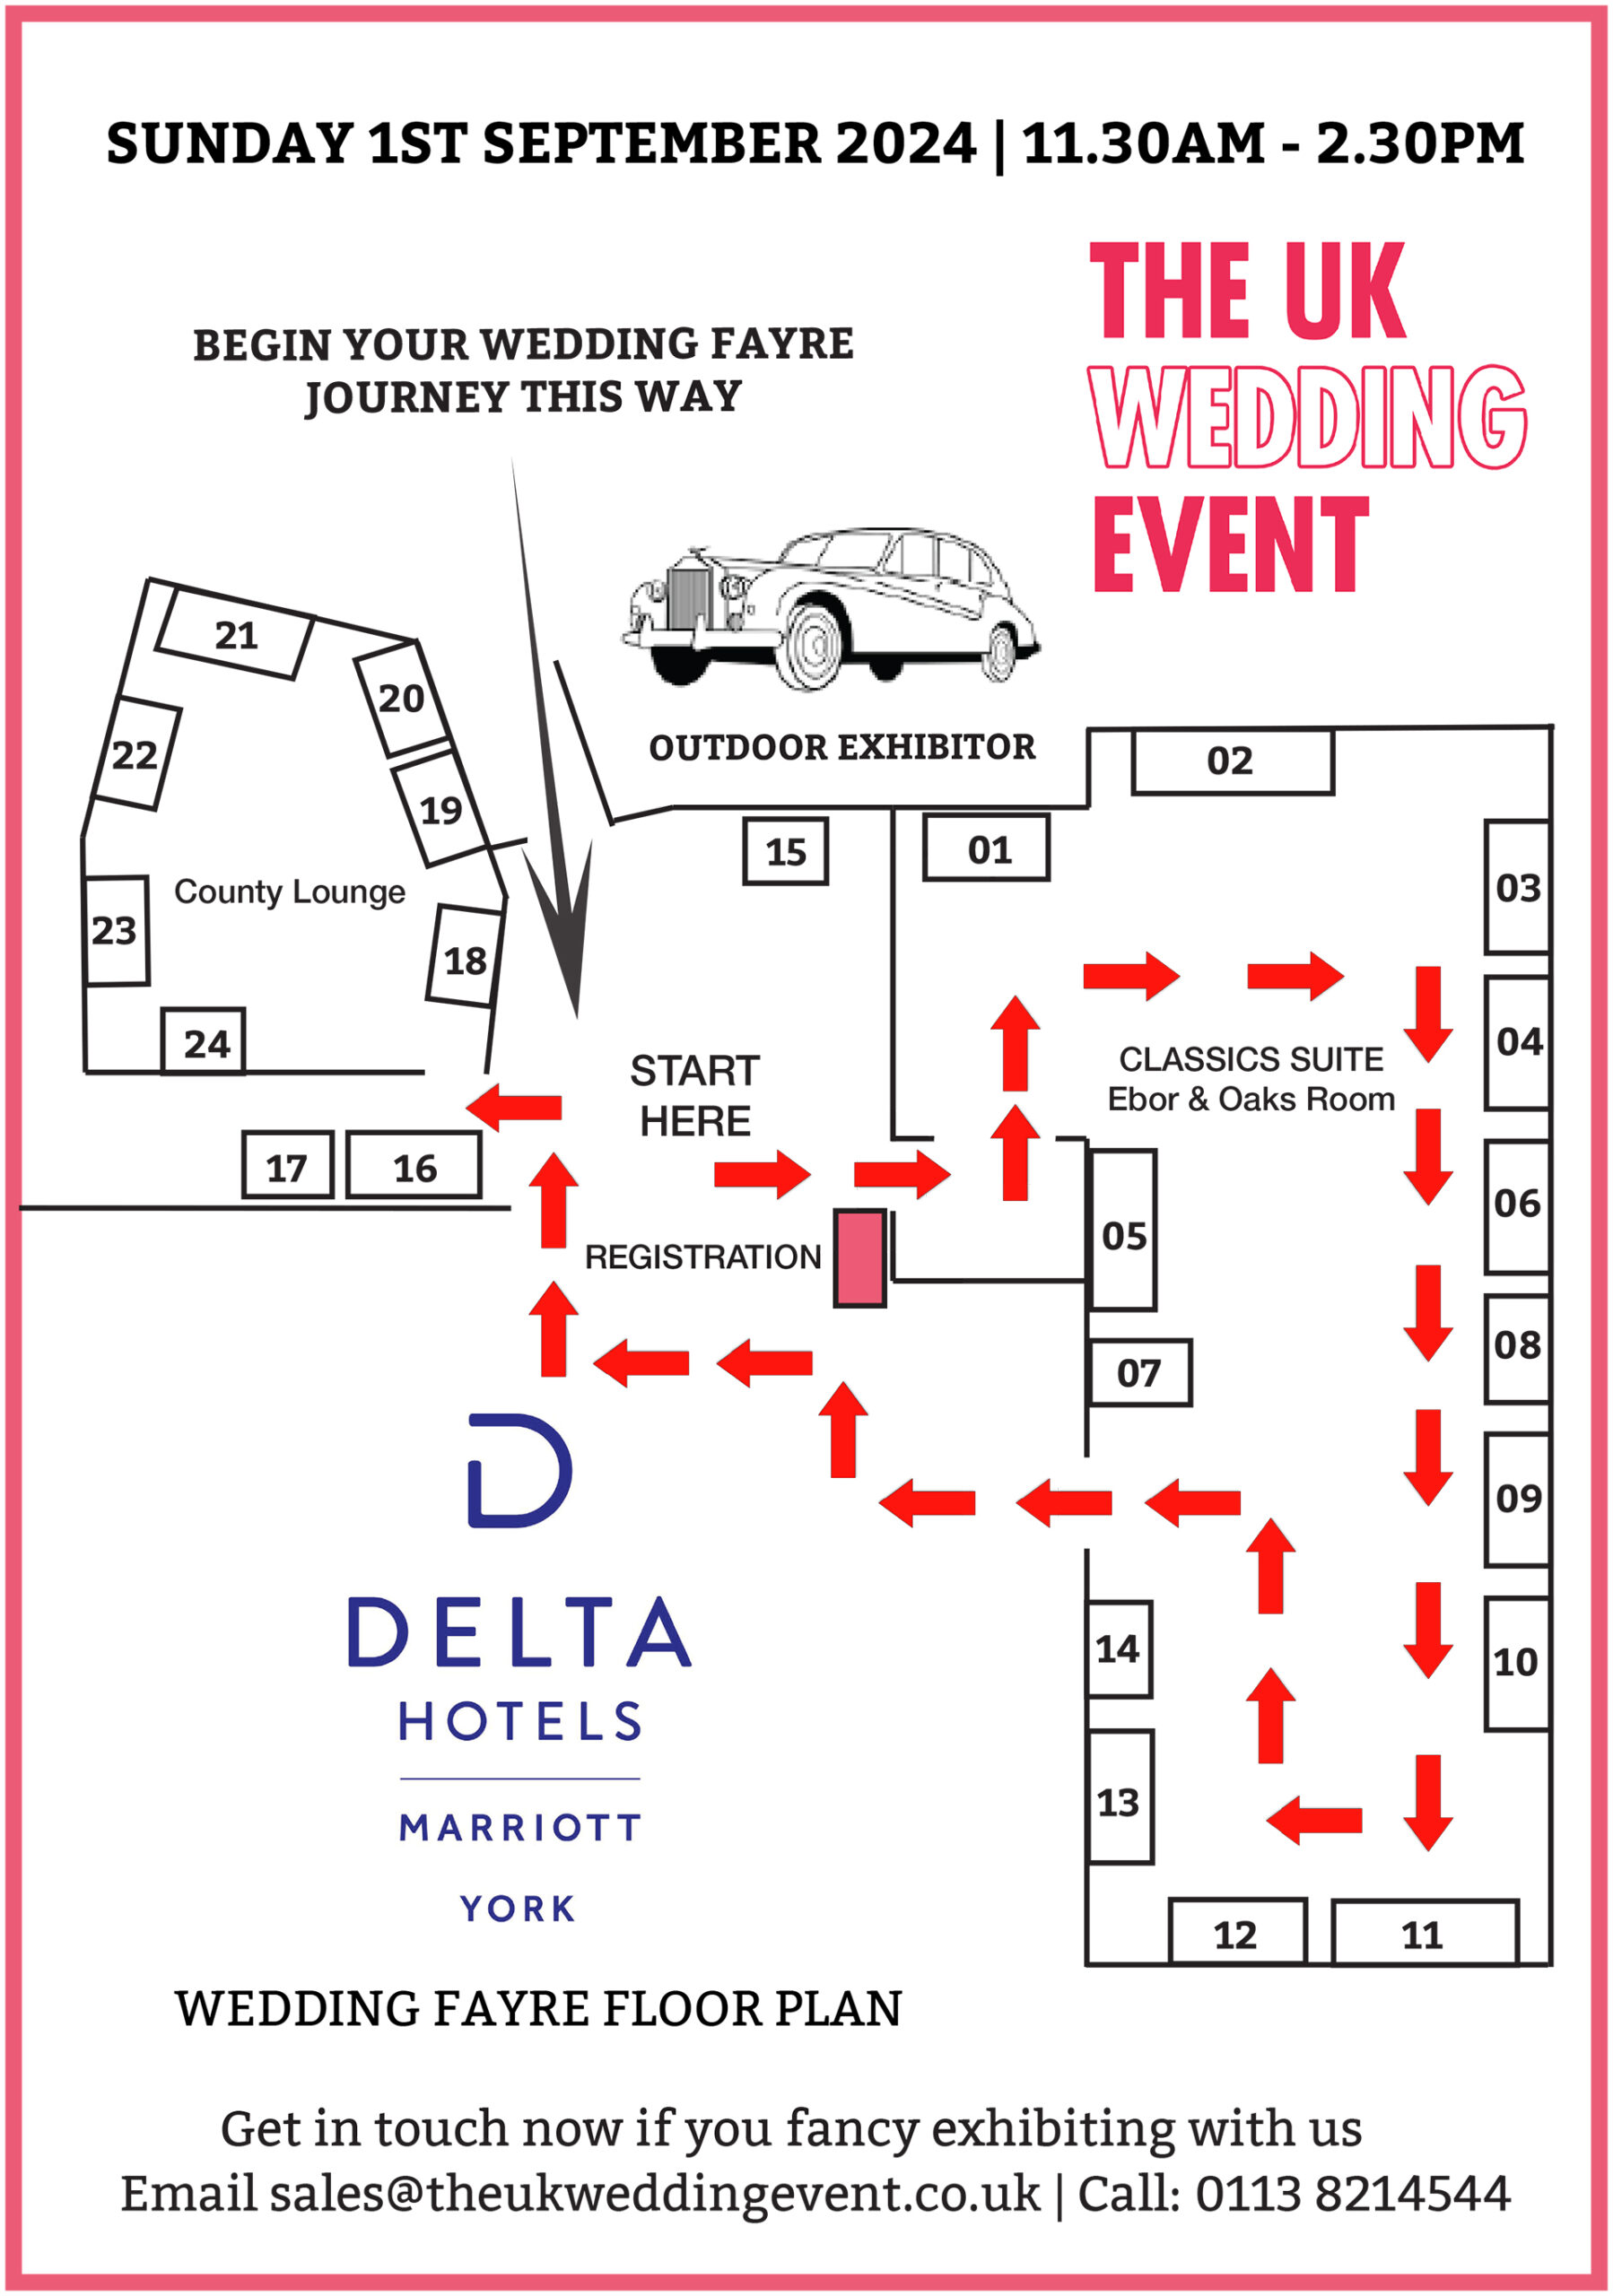 Delta Hotels by Marriott York Wedding Fayre Floor Plan | Sunday 1st September 2024